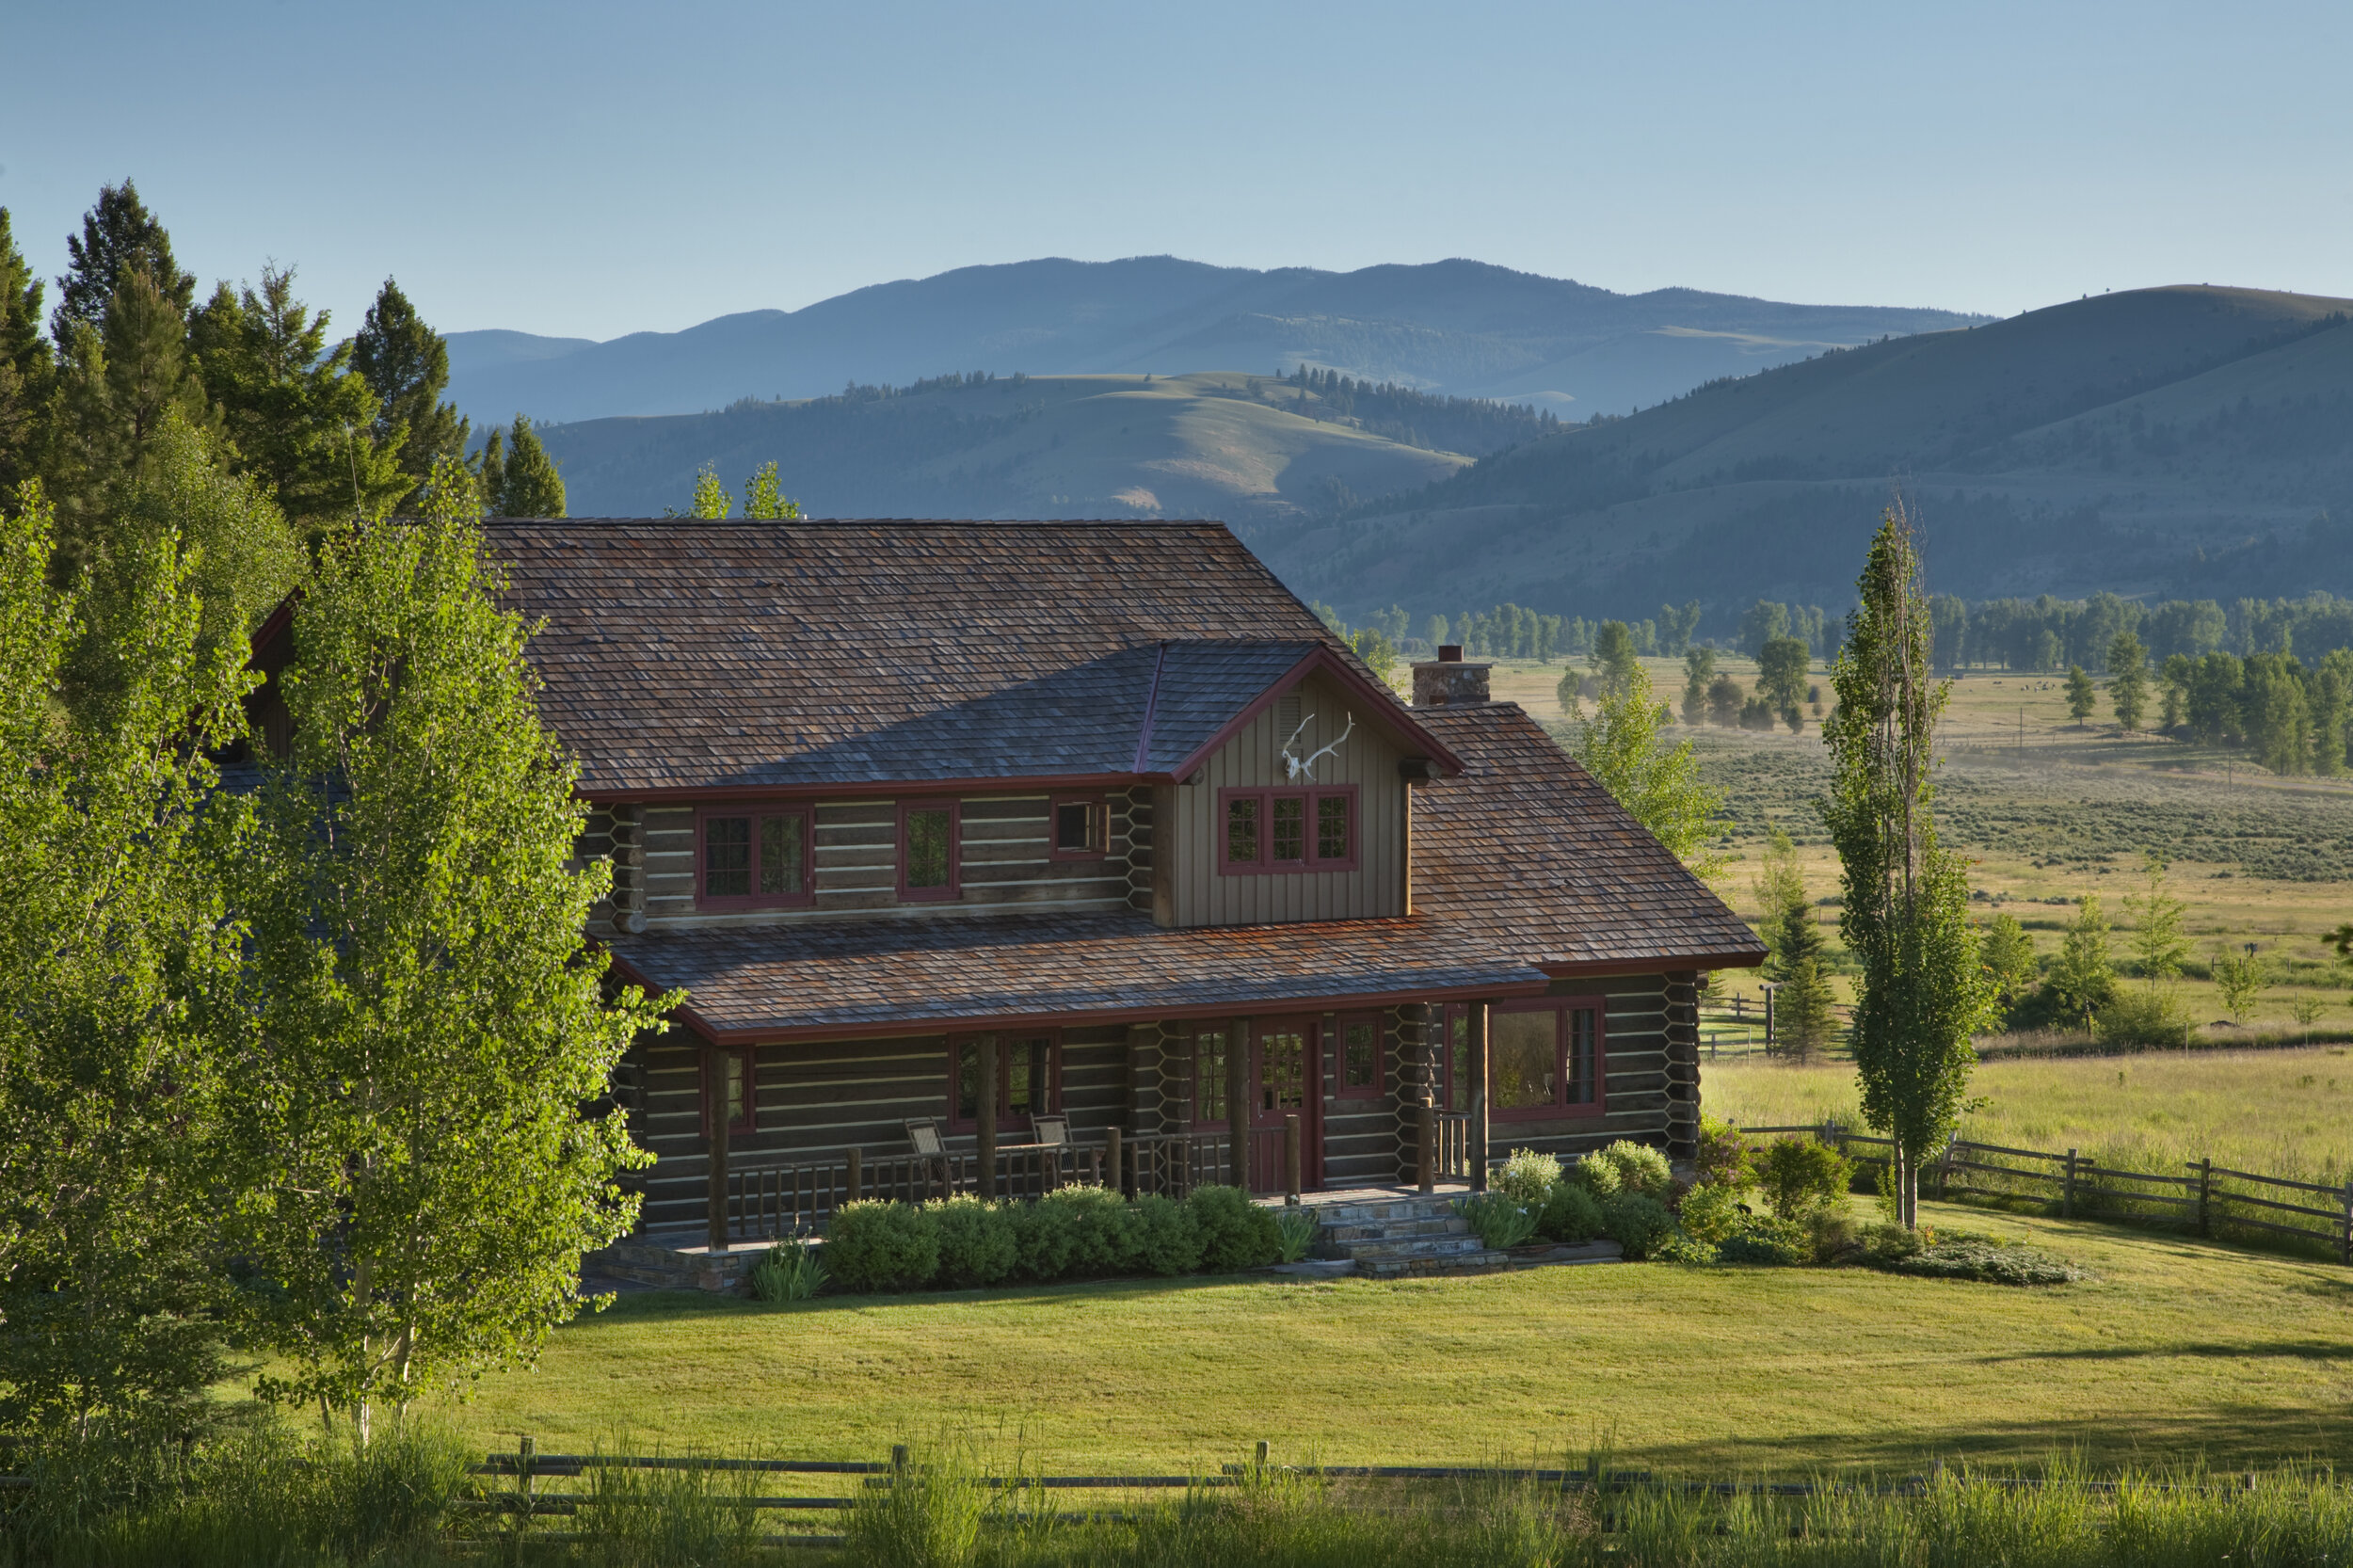   Bear House (photo credit: The Ranch at Rock Creek)  